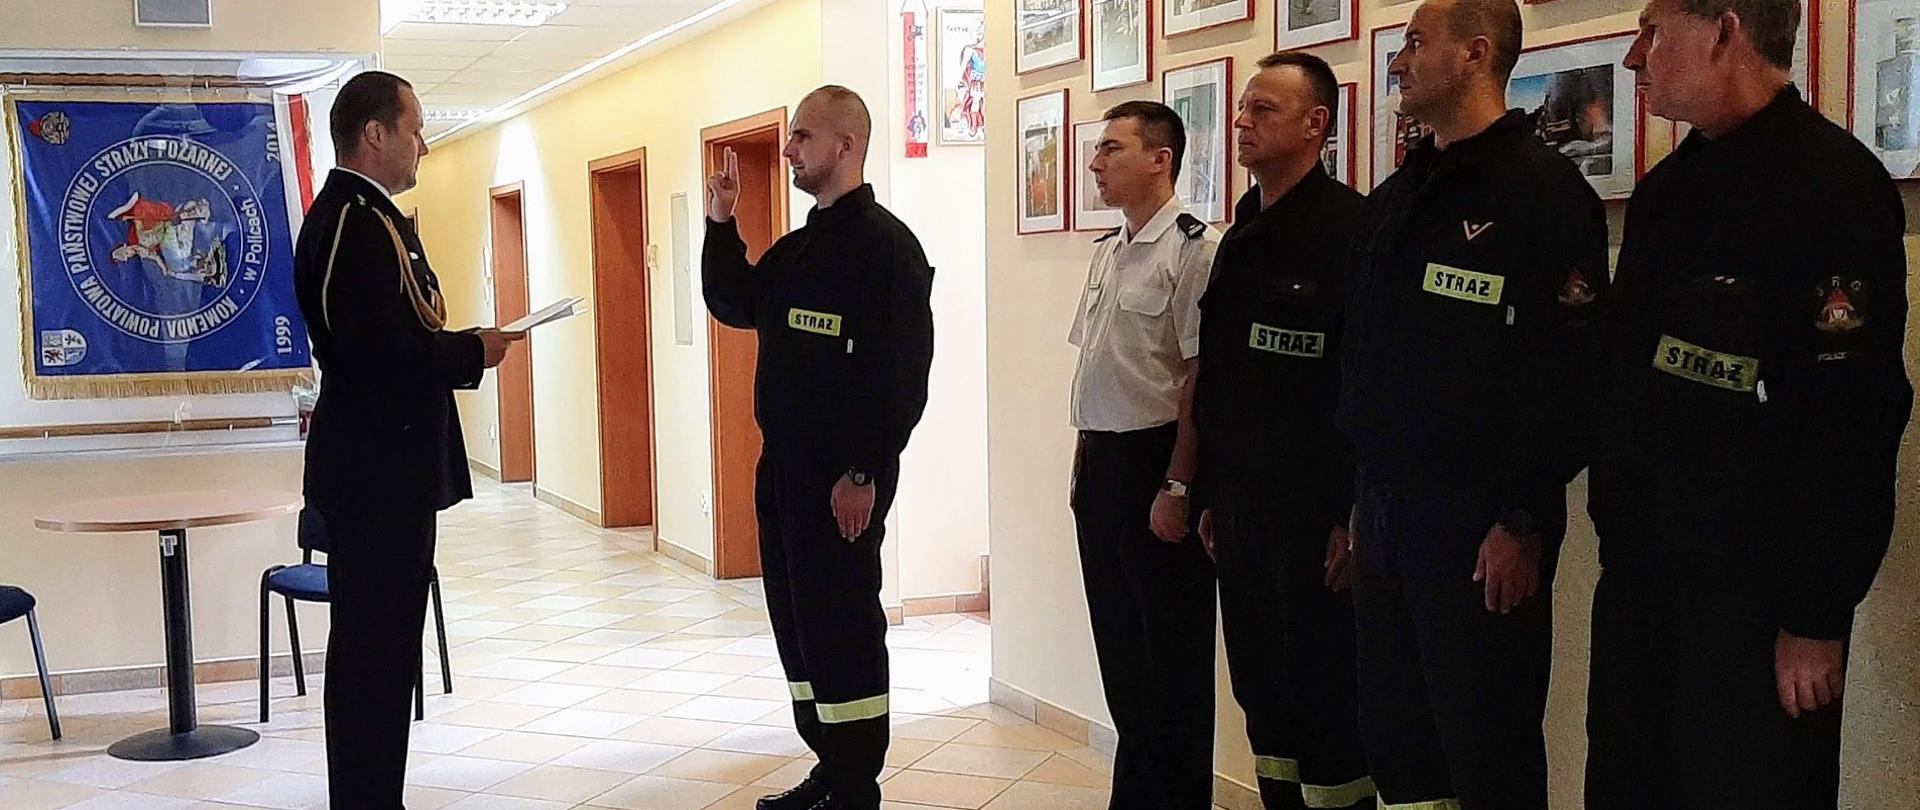 Strażacy stojący na baczność w szergu, jeden stojący przed komendantem, mający podniesioną prawą rękę